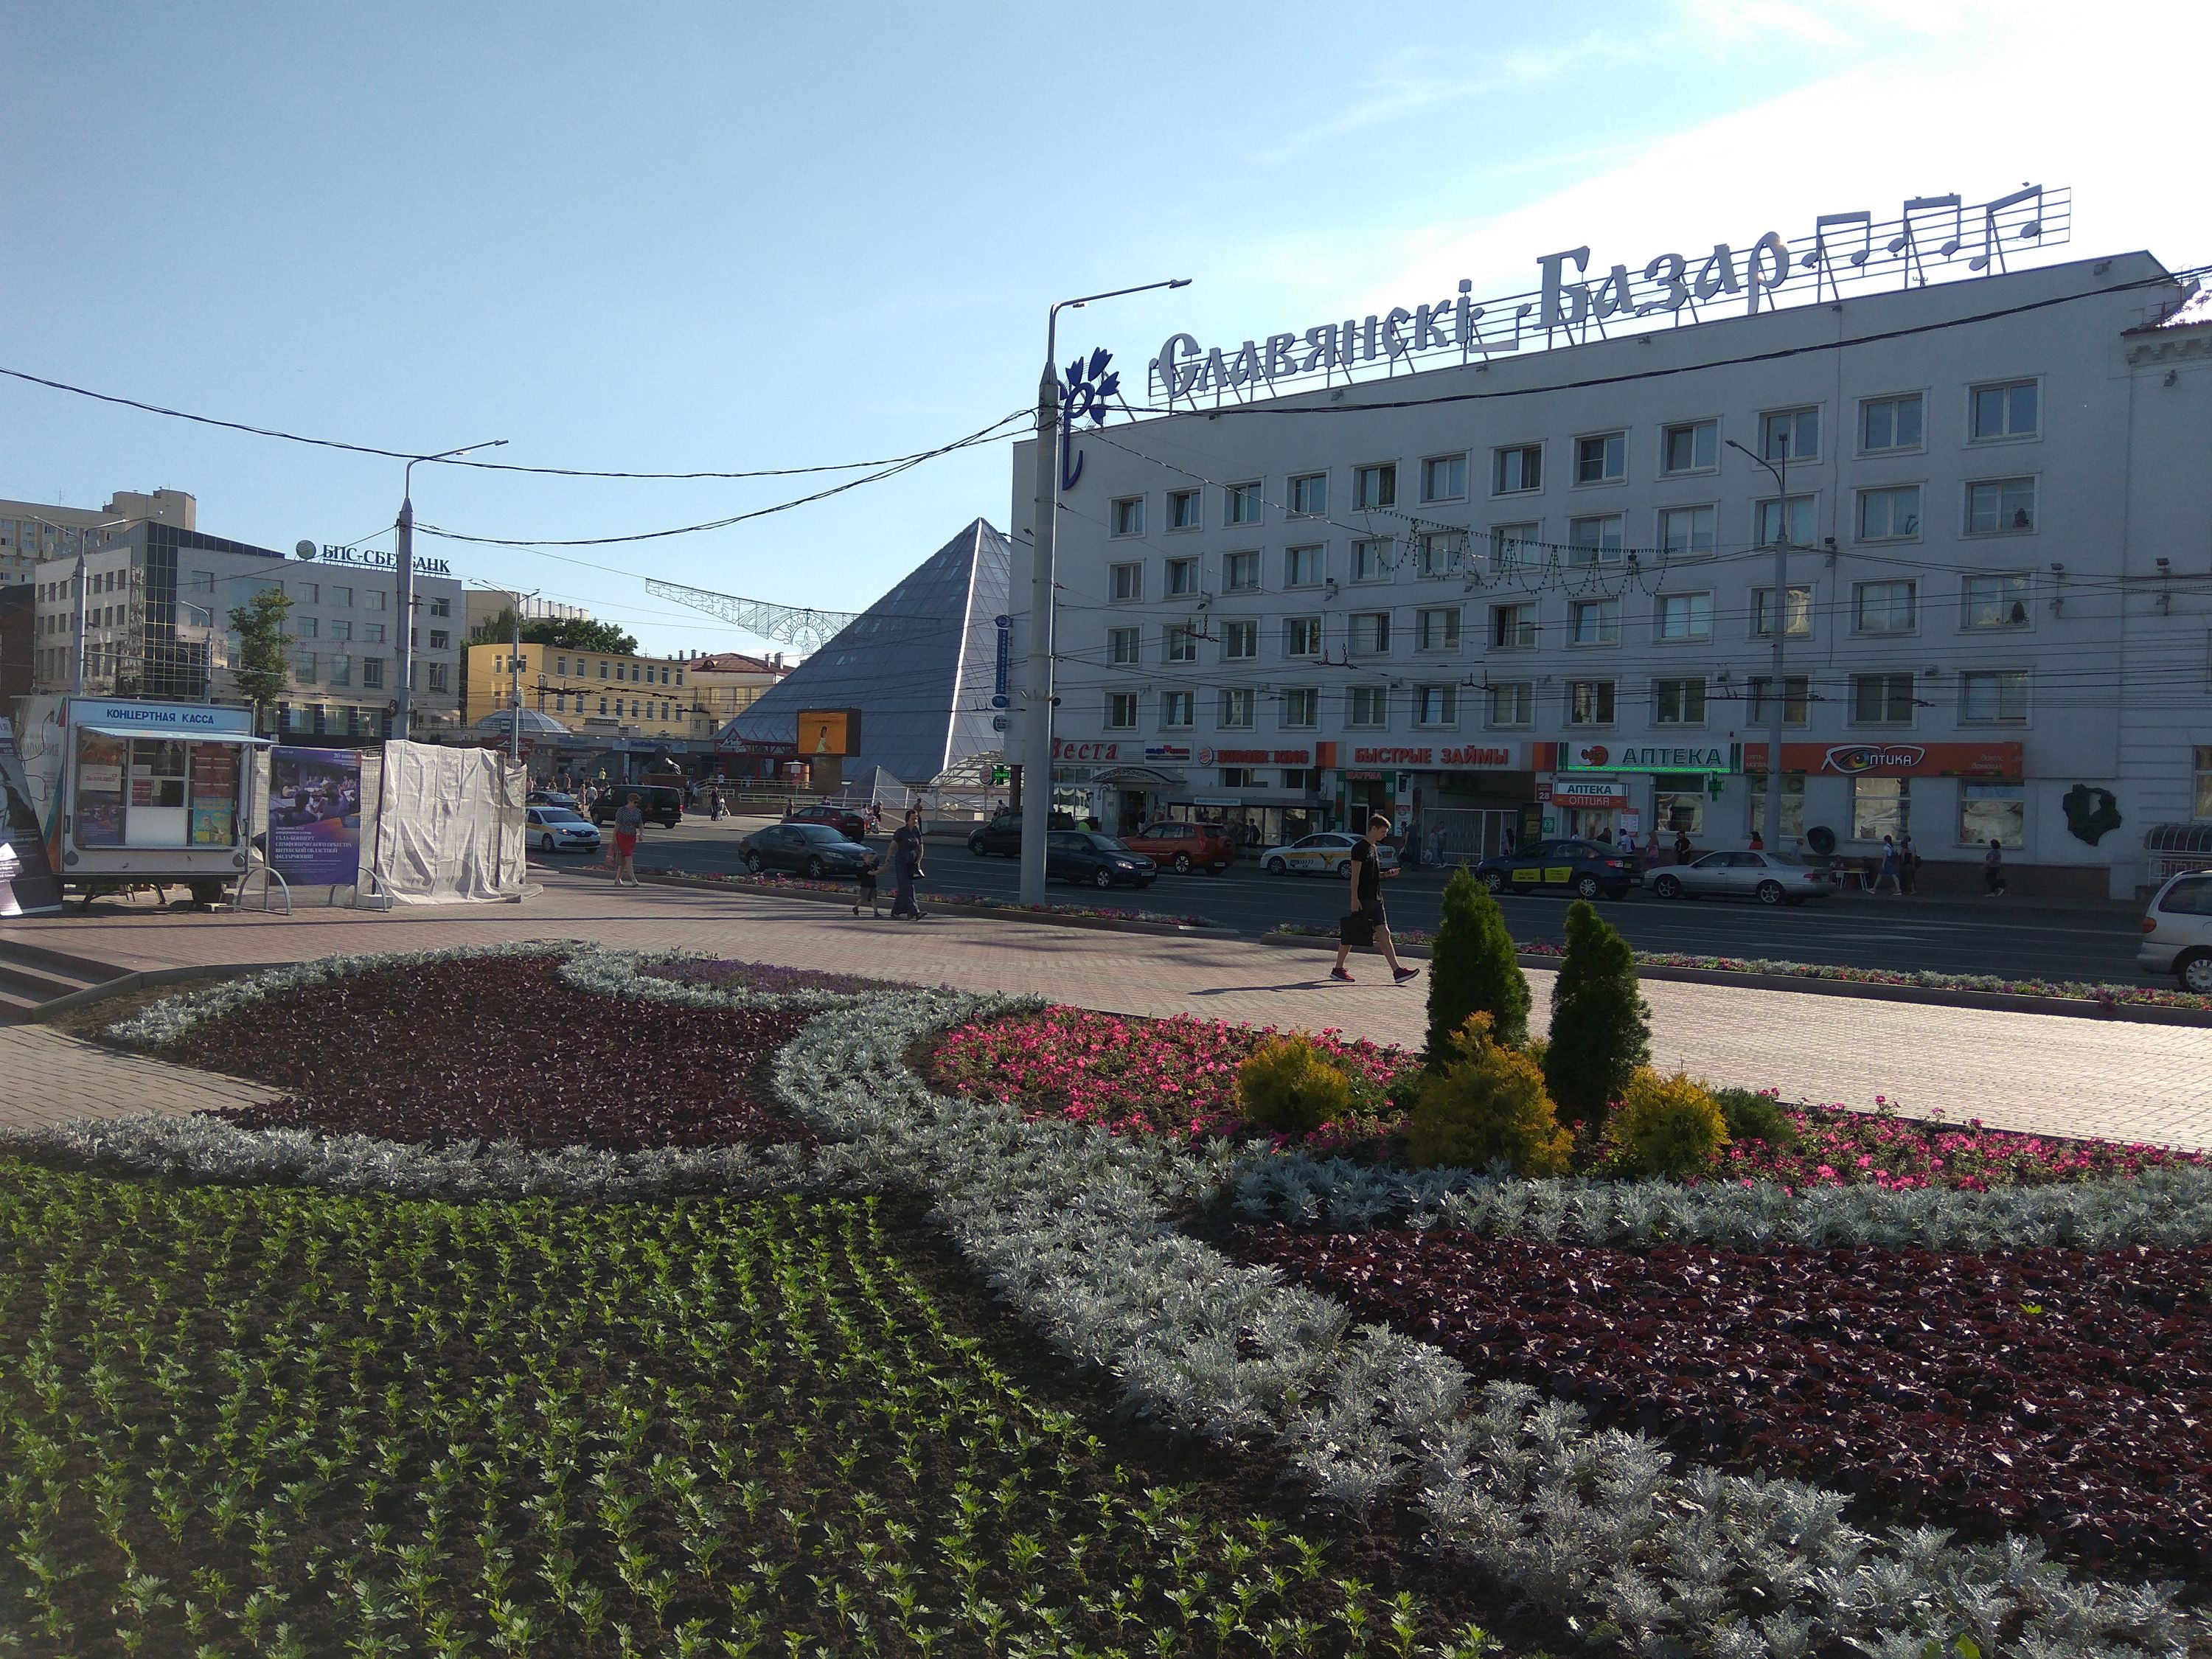 the 'Slavianski bazaar in Vitebsk'